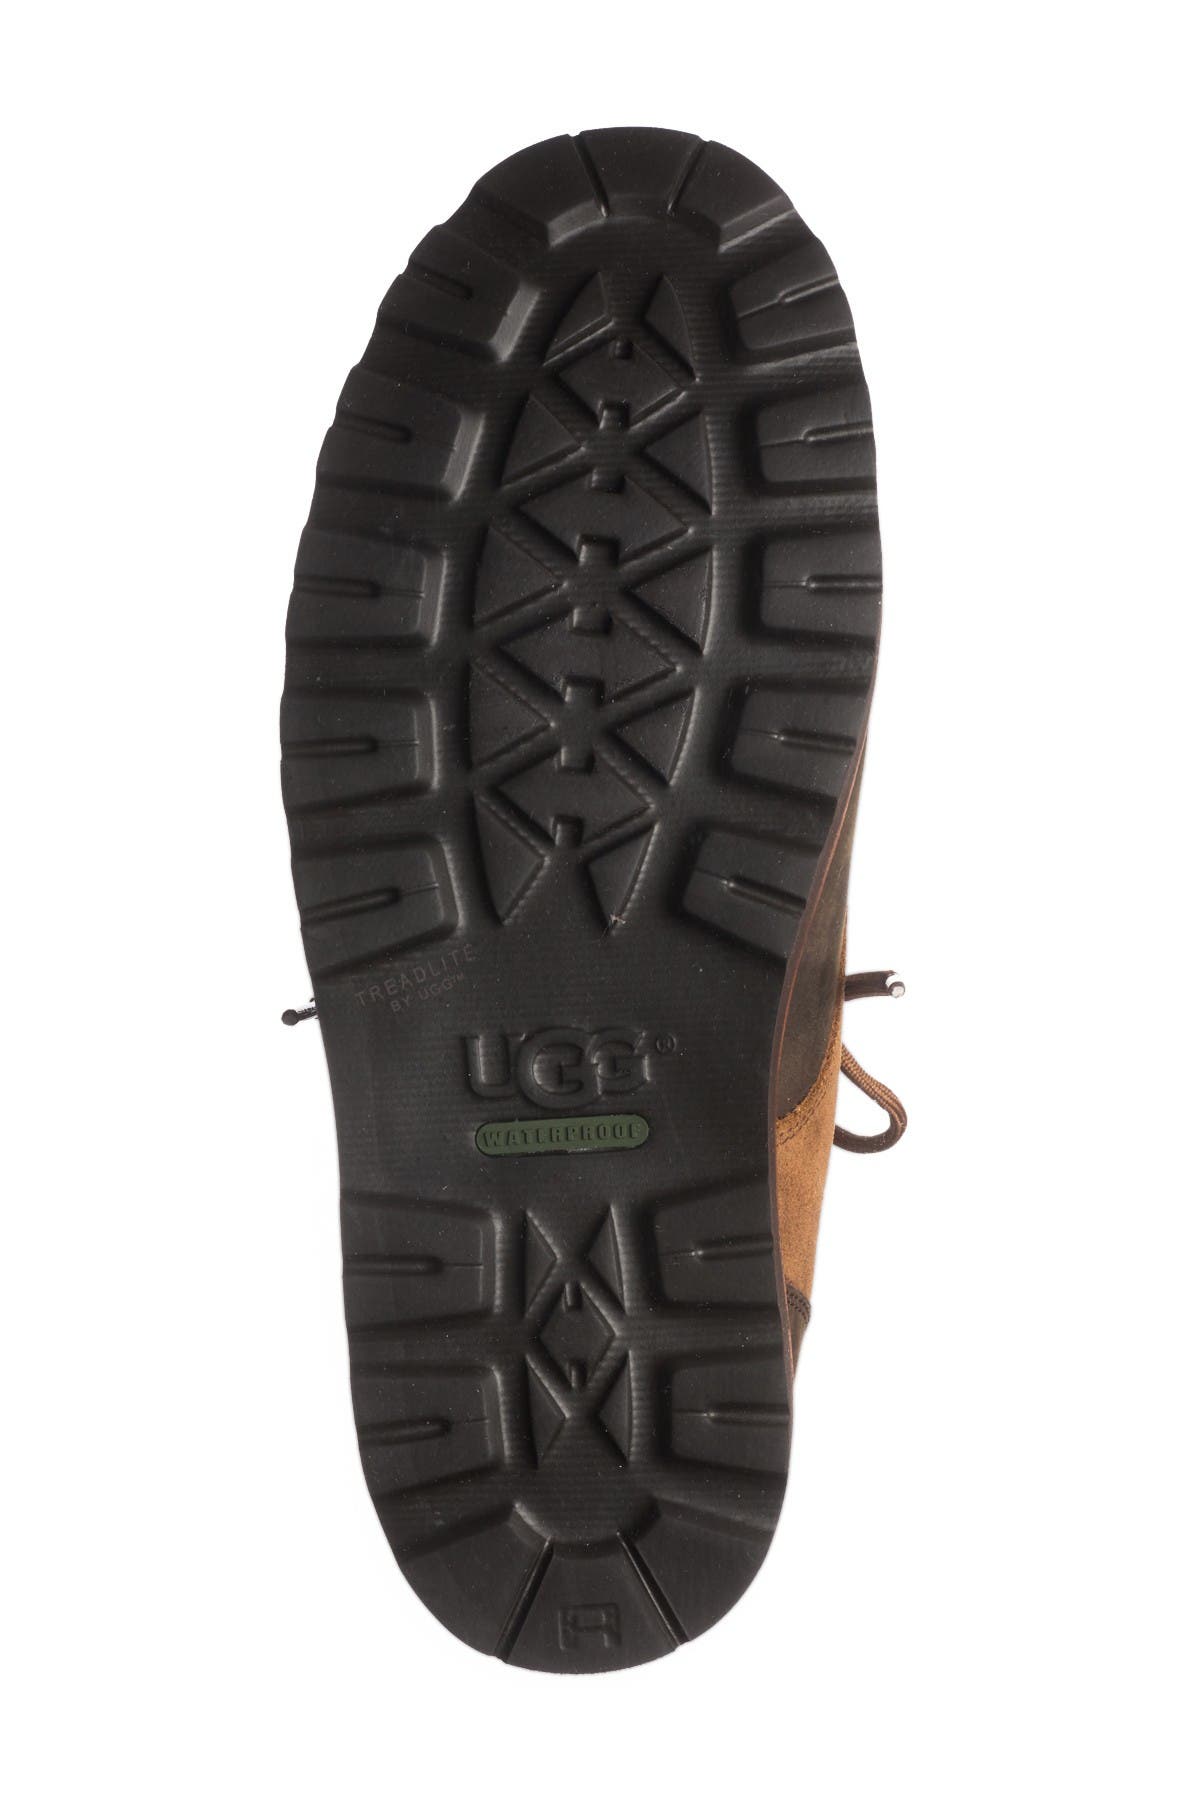 ugg hannen plain toe genuine shearling waterproof boot